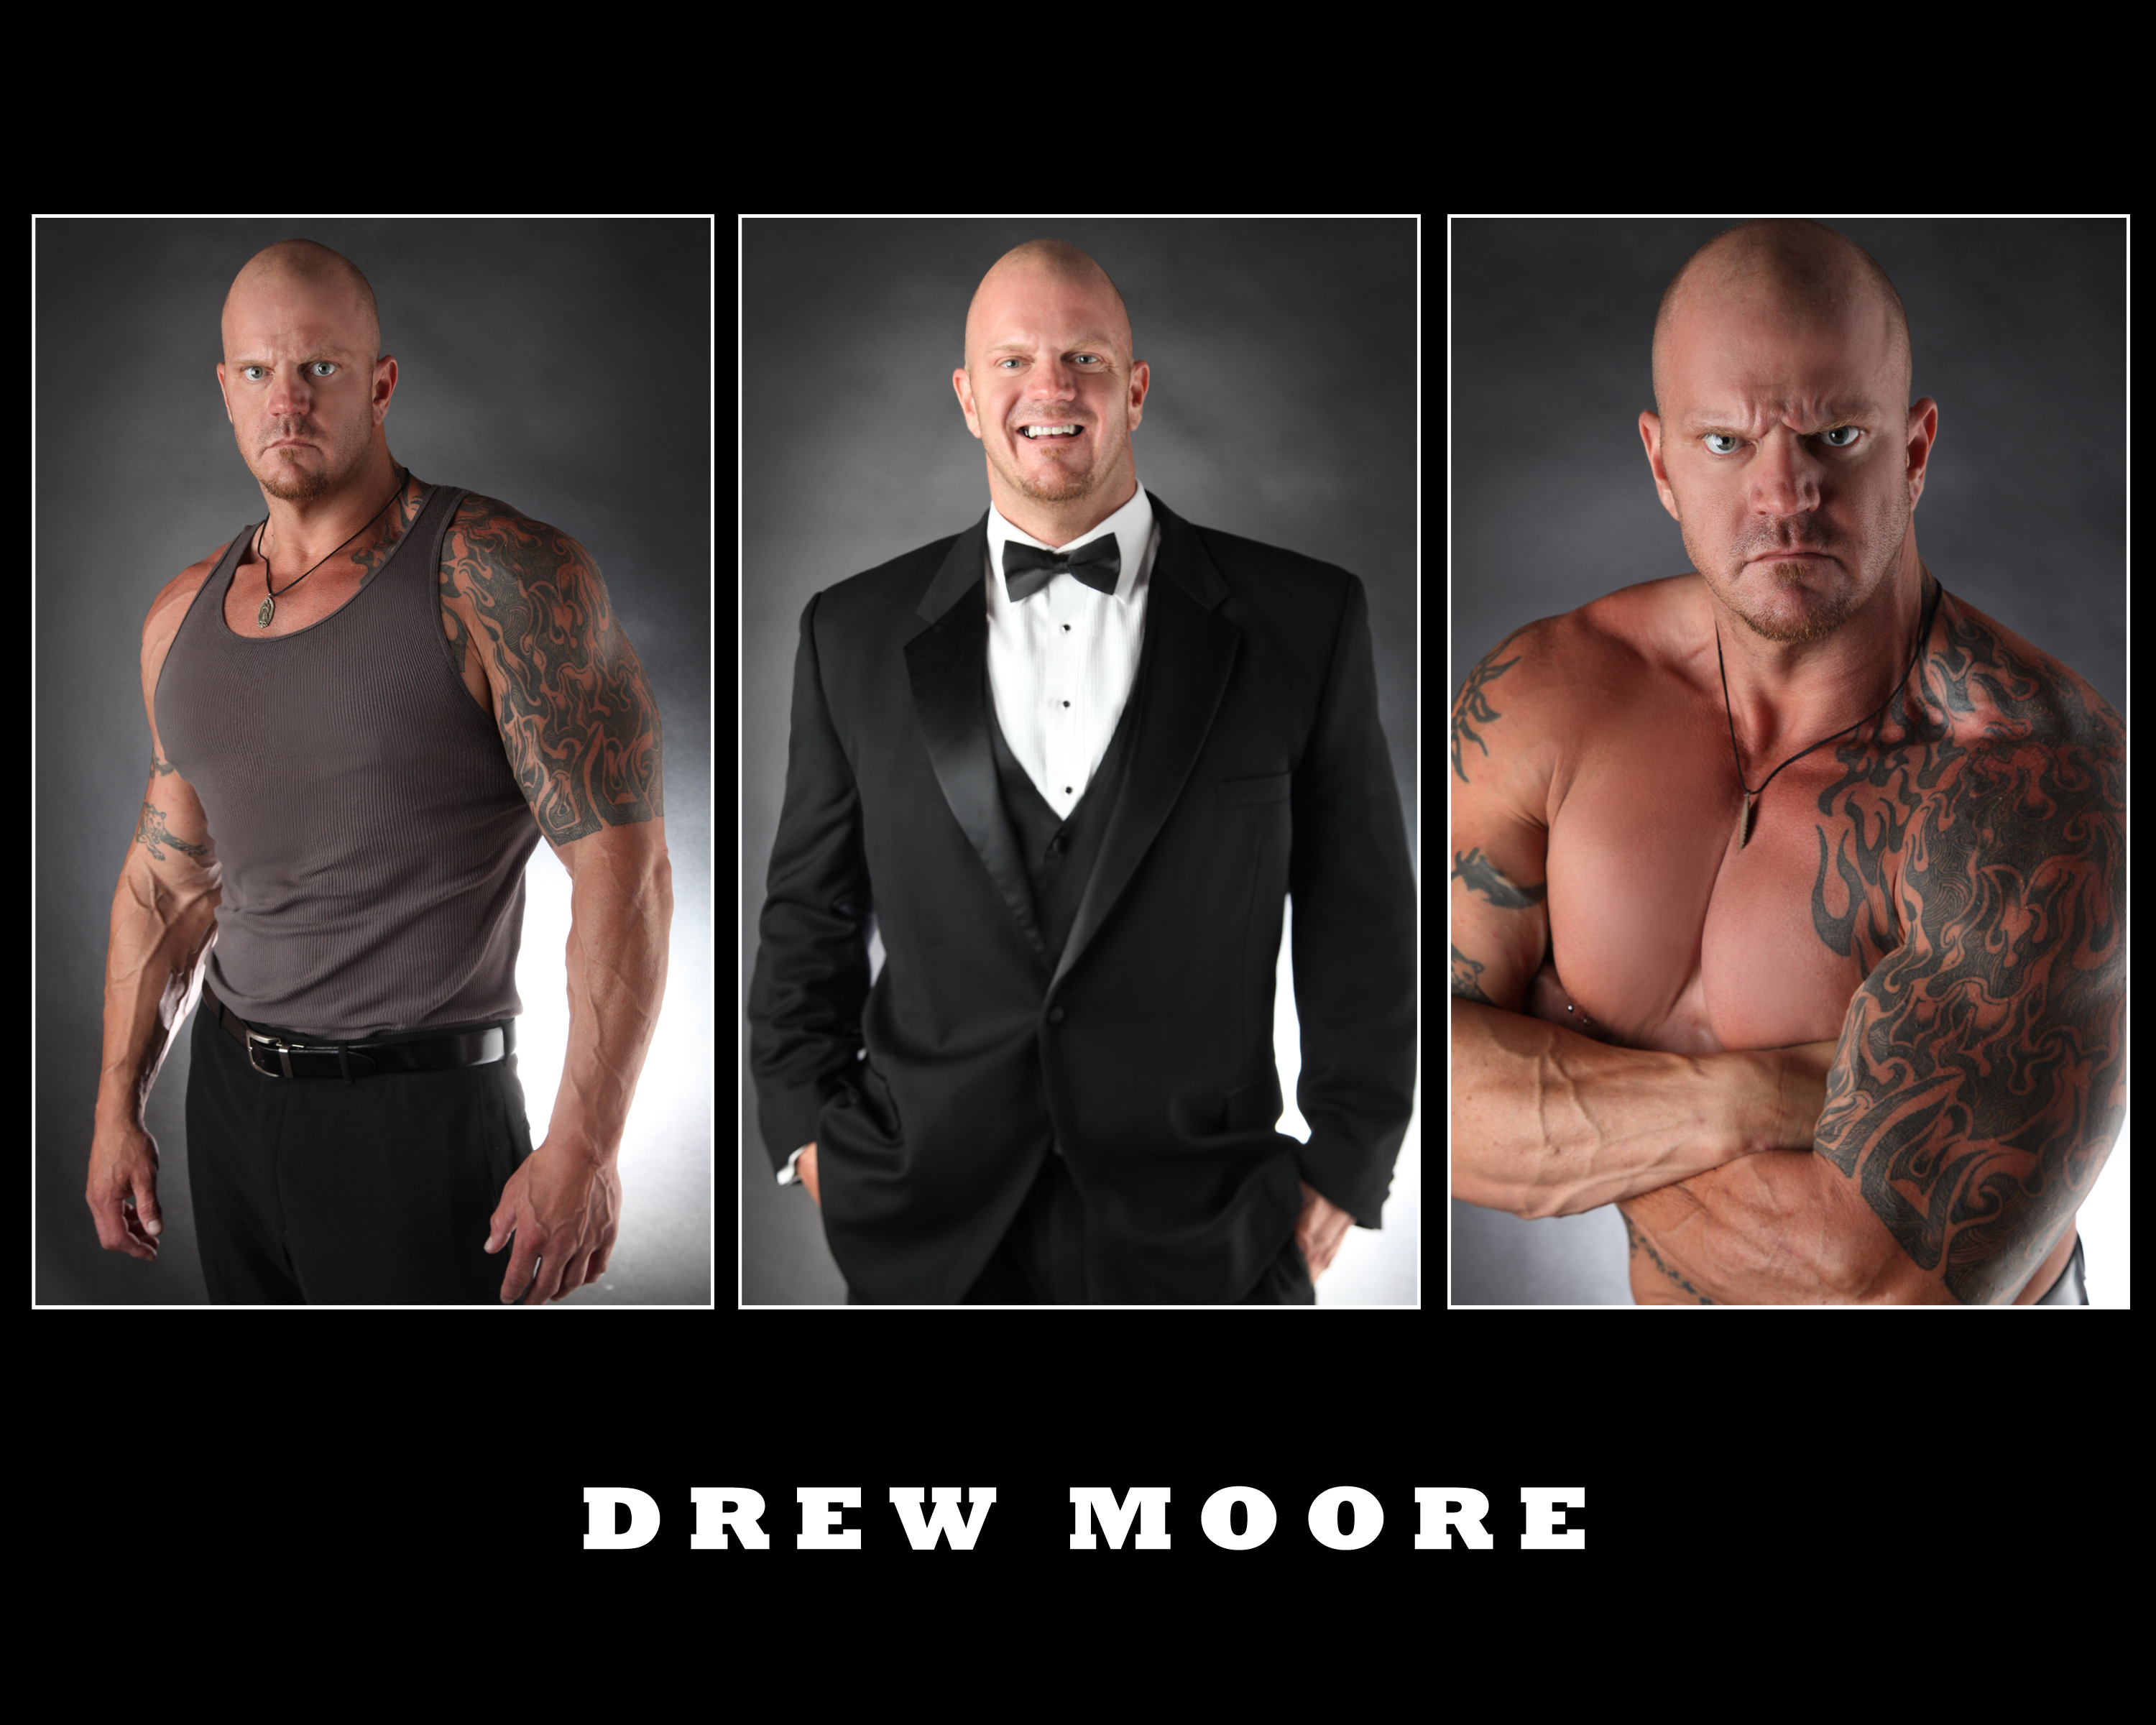 Drew Moore